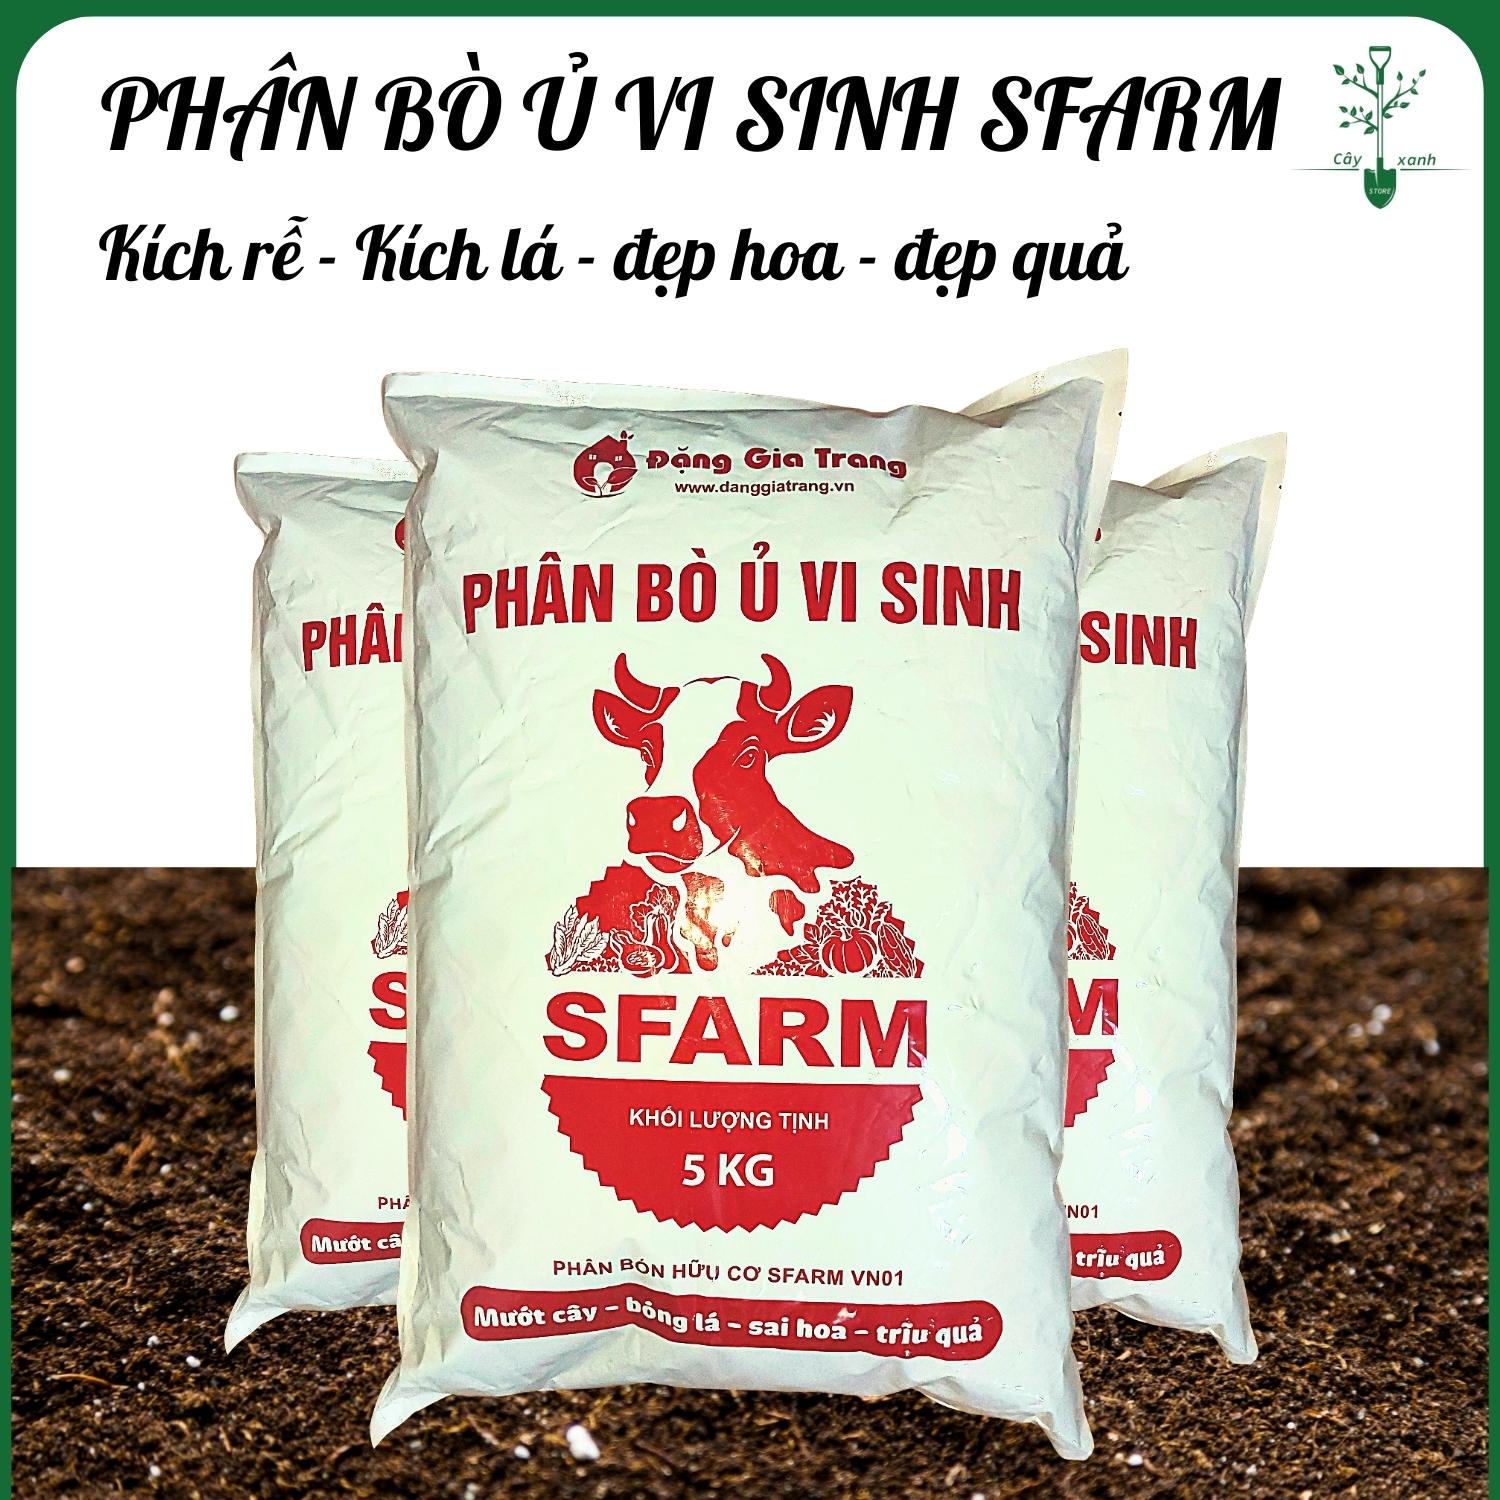 Phân bò ủ vi sinh SFARM đã qua xử lý - Kích rễ, Kích hoa, Đẹp hoa, Đẹp quả - Túi 5kg - Cây Xanh Store